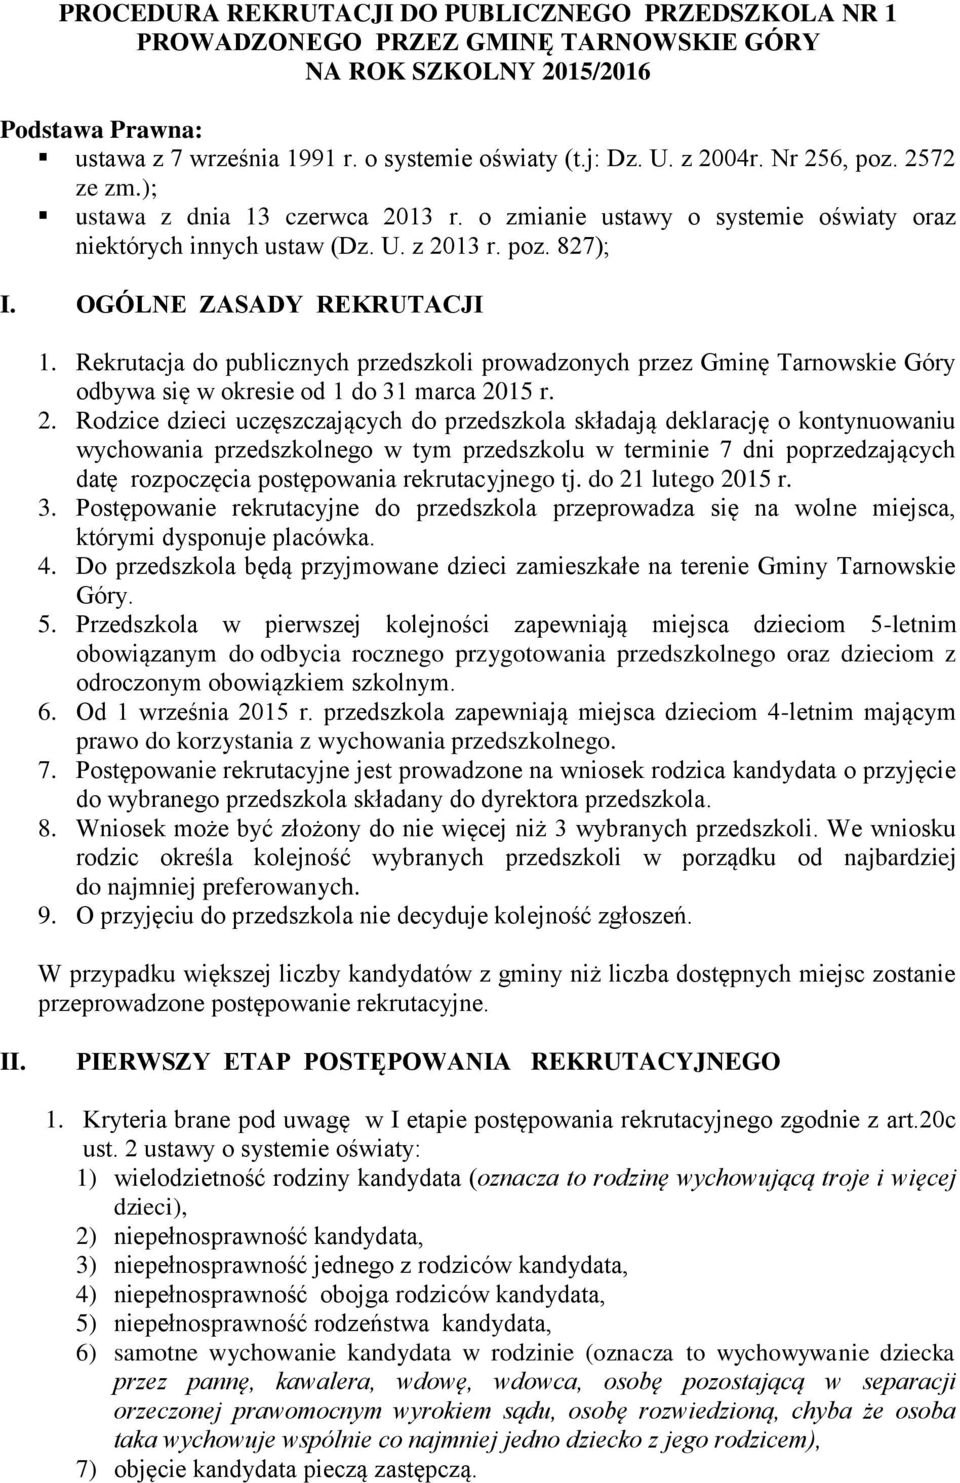 Rekrutacja do publicznych przedszkoli prowadzonych przez Gminę Tarnowskie Góry odbywa się w okresie od 1 do 31 marca 20